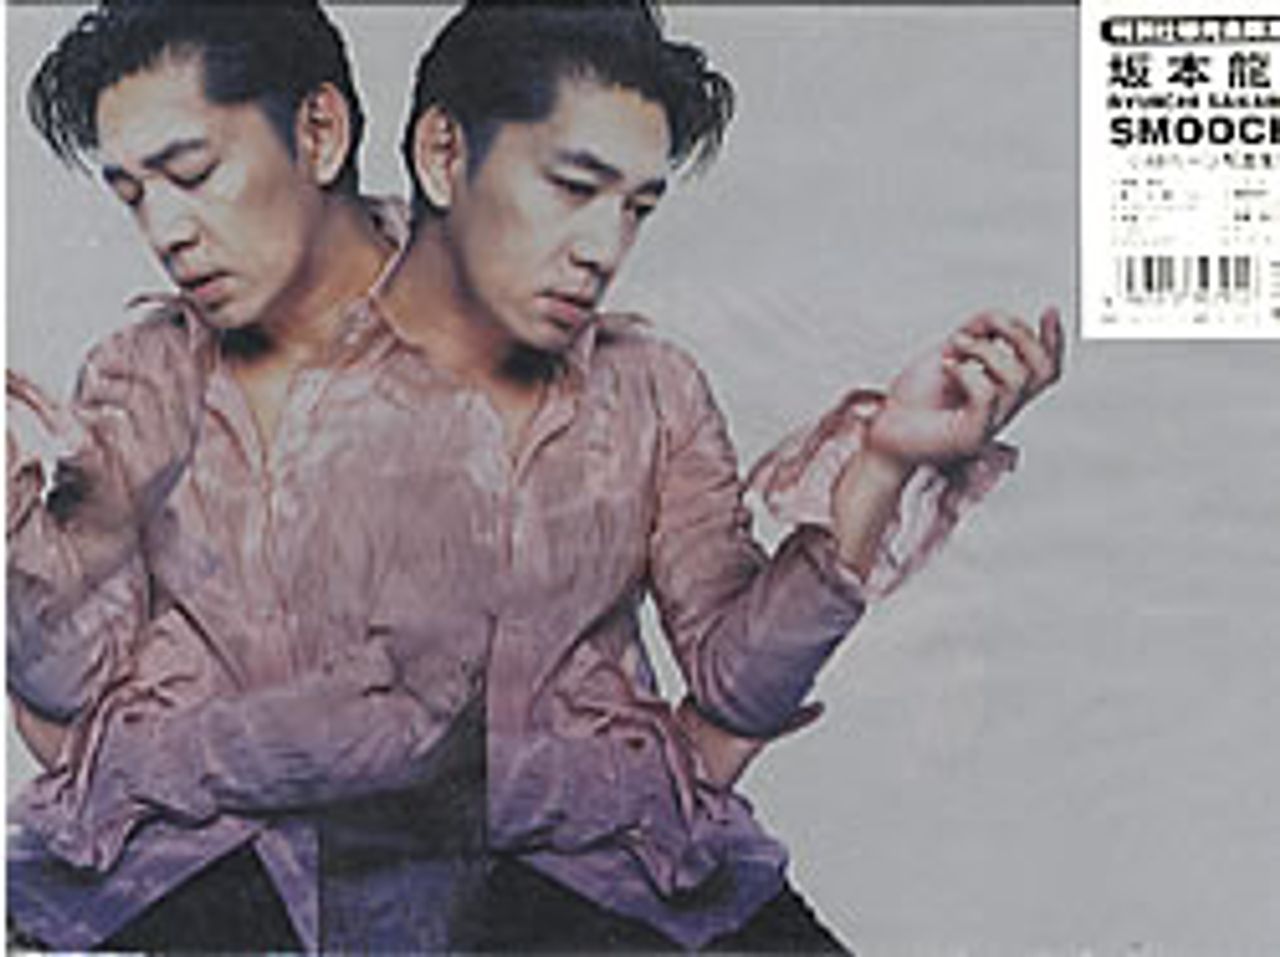 Ryuichi Sakamoto Smoochy - Limited Package Japanese CD album